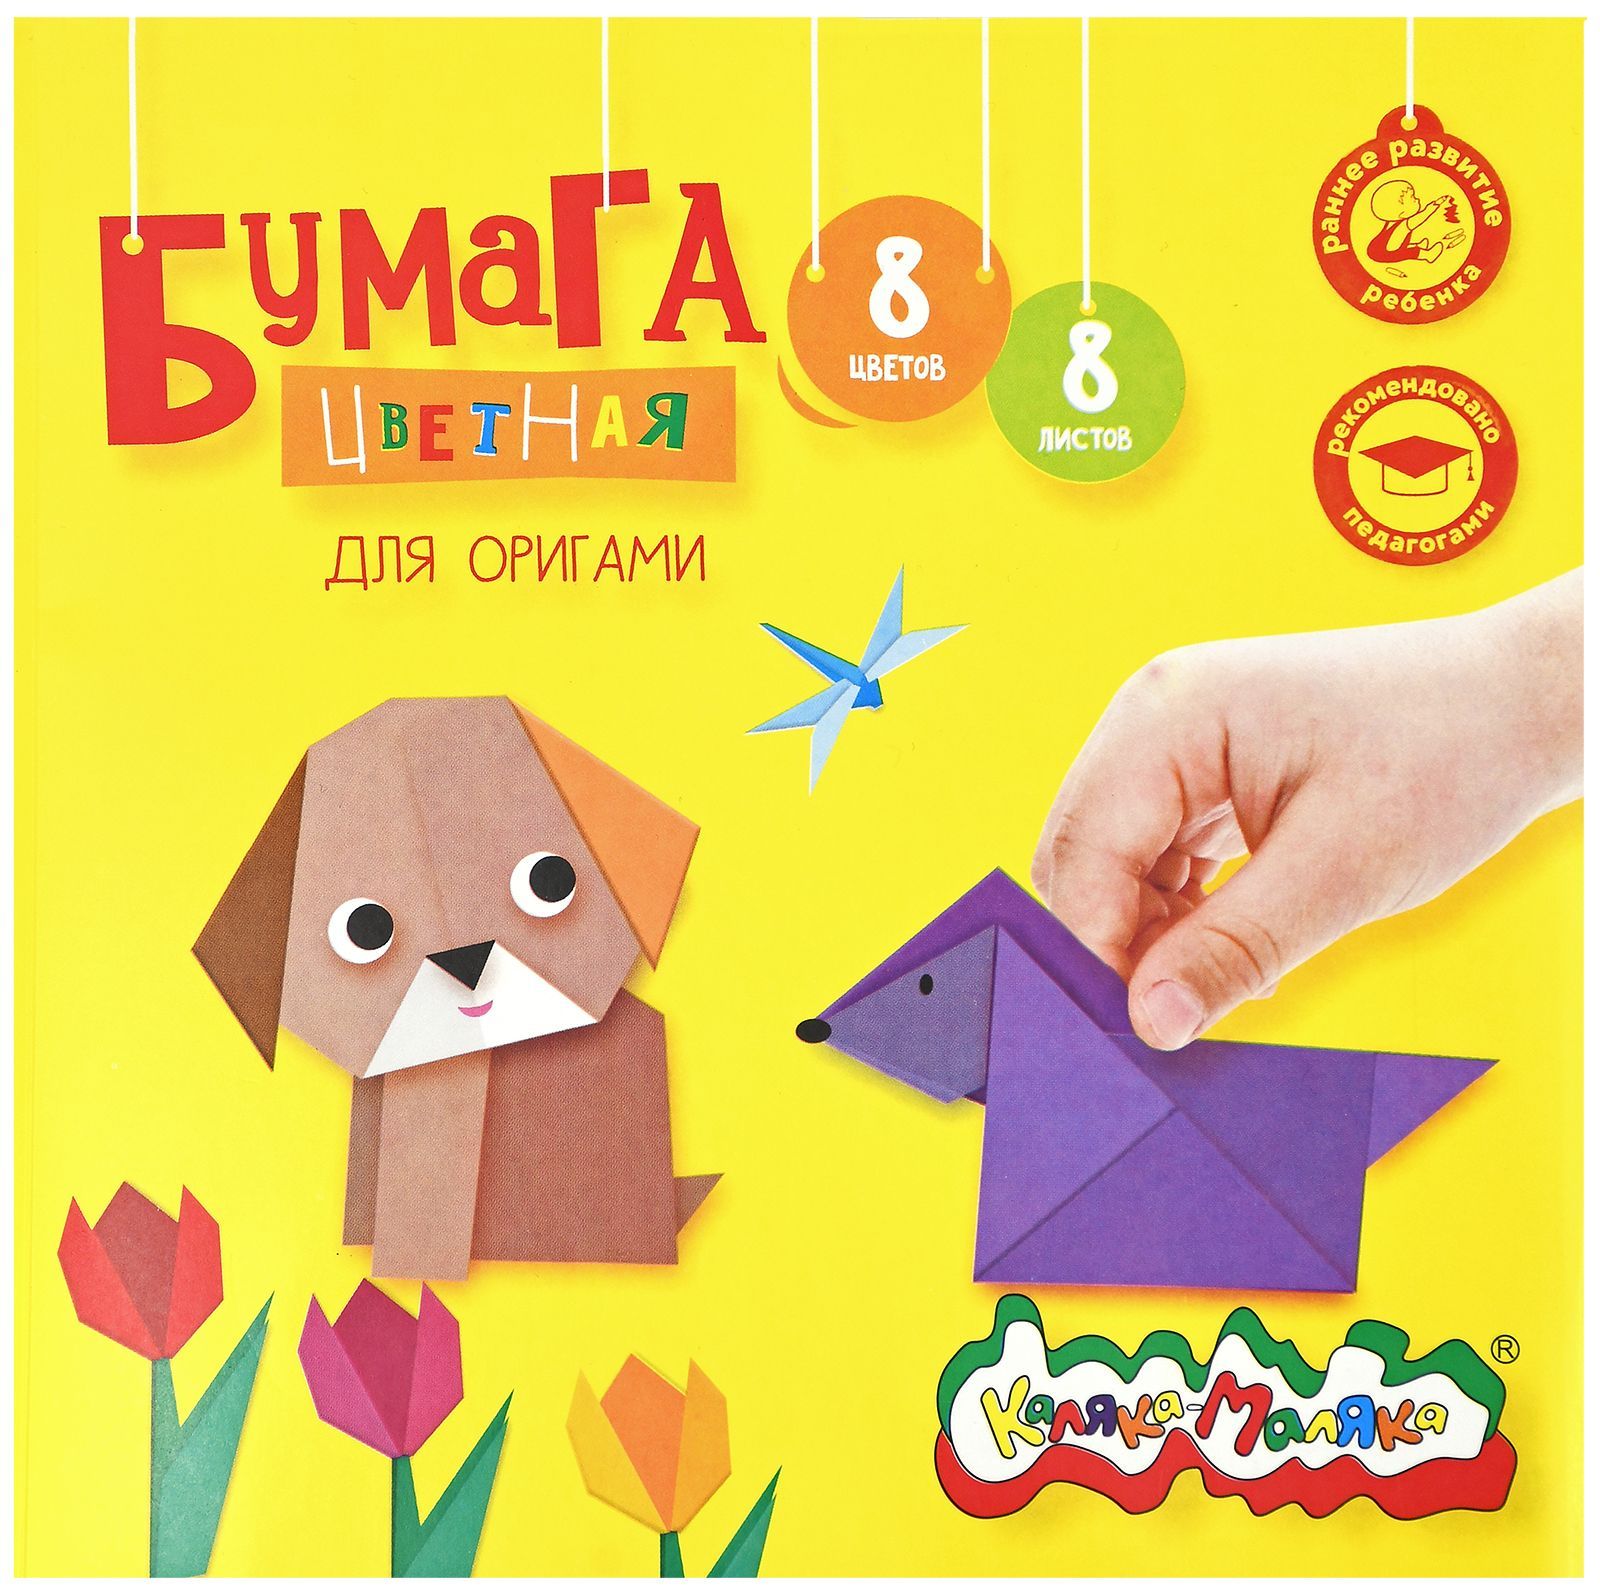 Бумага цветная для оригами 2-сторонняя Каляка-Маляка 195х195 мм, 8 цветов 8листов, 80 г/м2, в папке, 3+: купить по низкой цене оптом или в розницу сдоставкой